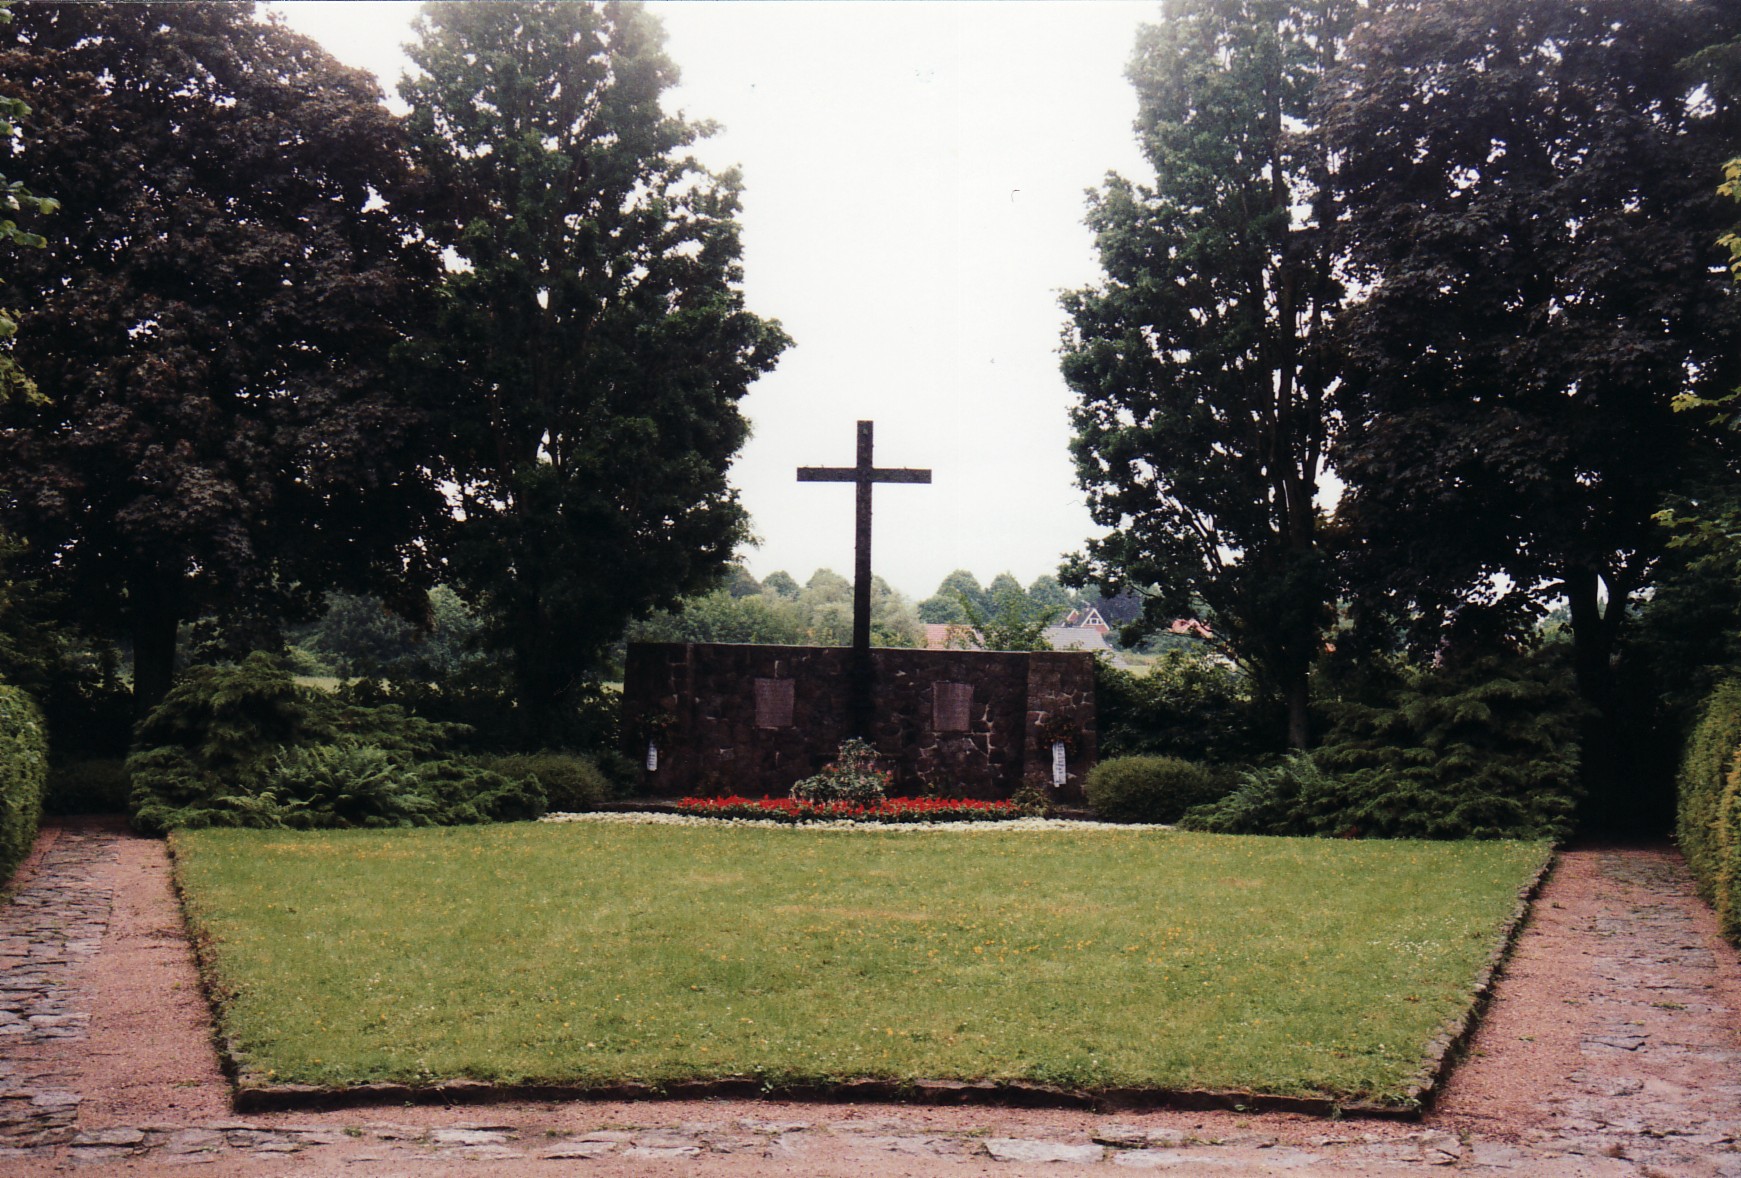 Mur z tablicami upamiętniającymi i krzyżem